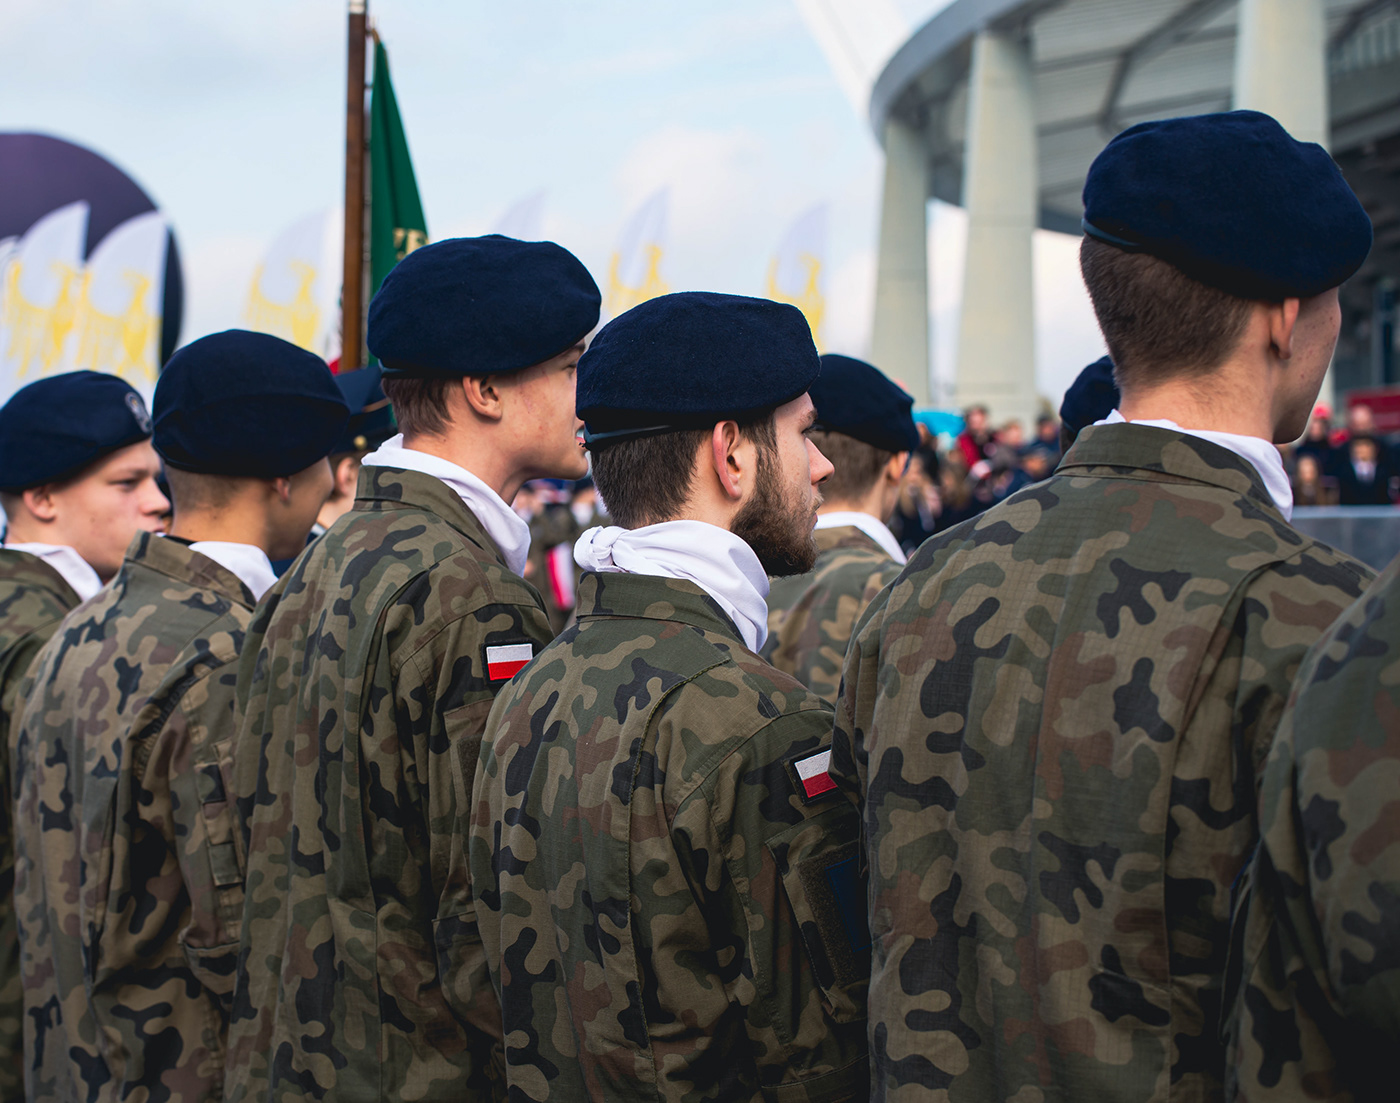 niepodległość polska poland katowice proud Military army independence day chorzow Śląsk